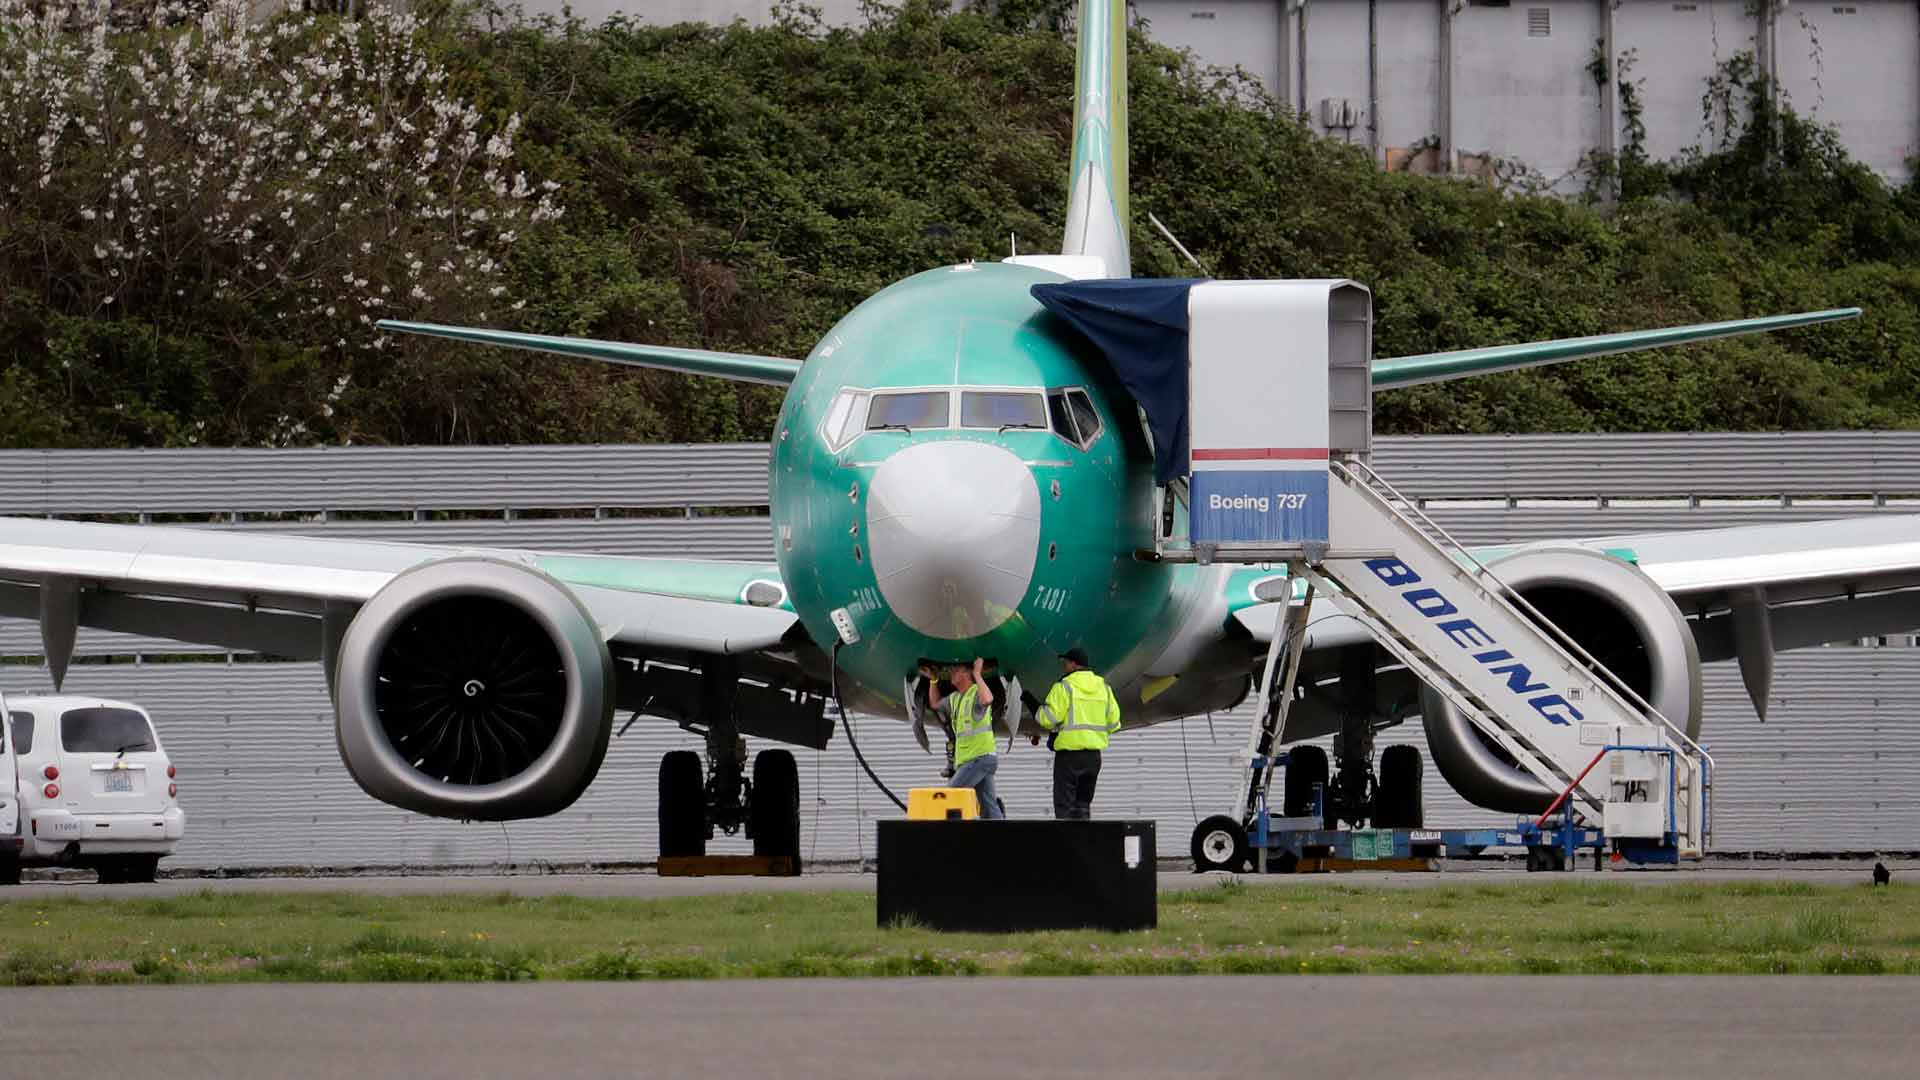 La entrega de aviones de Boeing cae un 19% tras el escándalo del 737 MAX